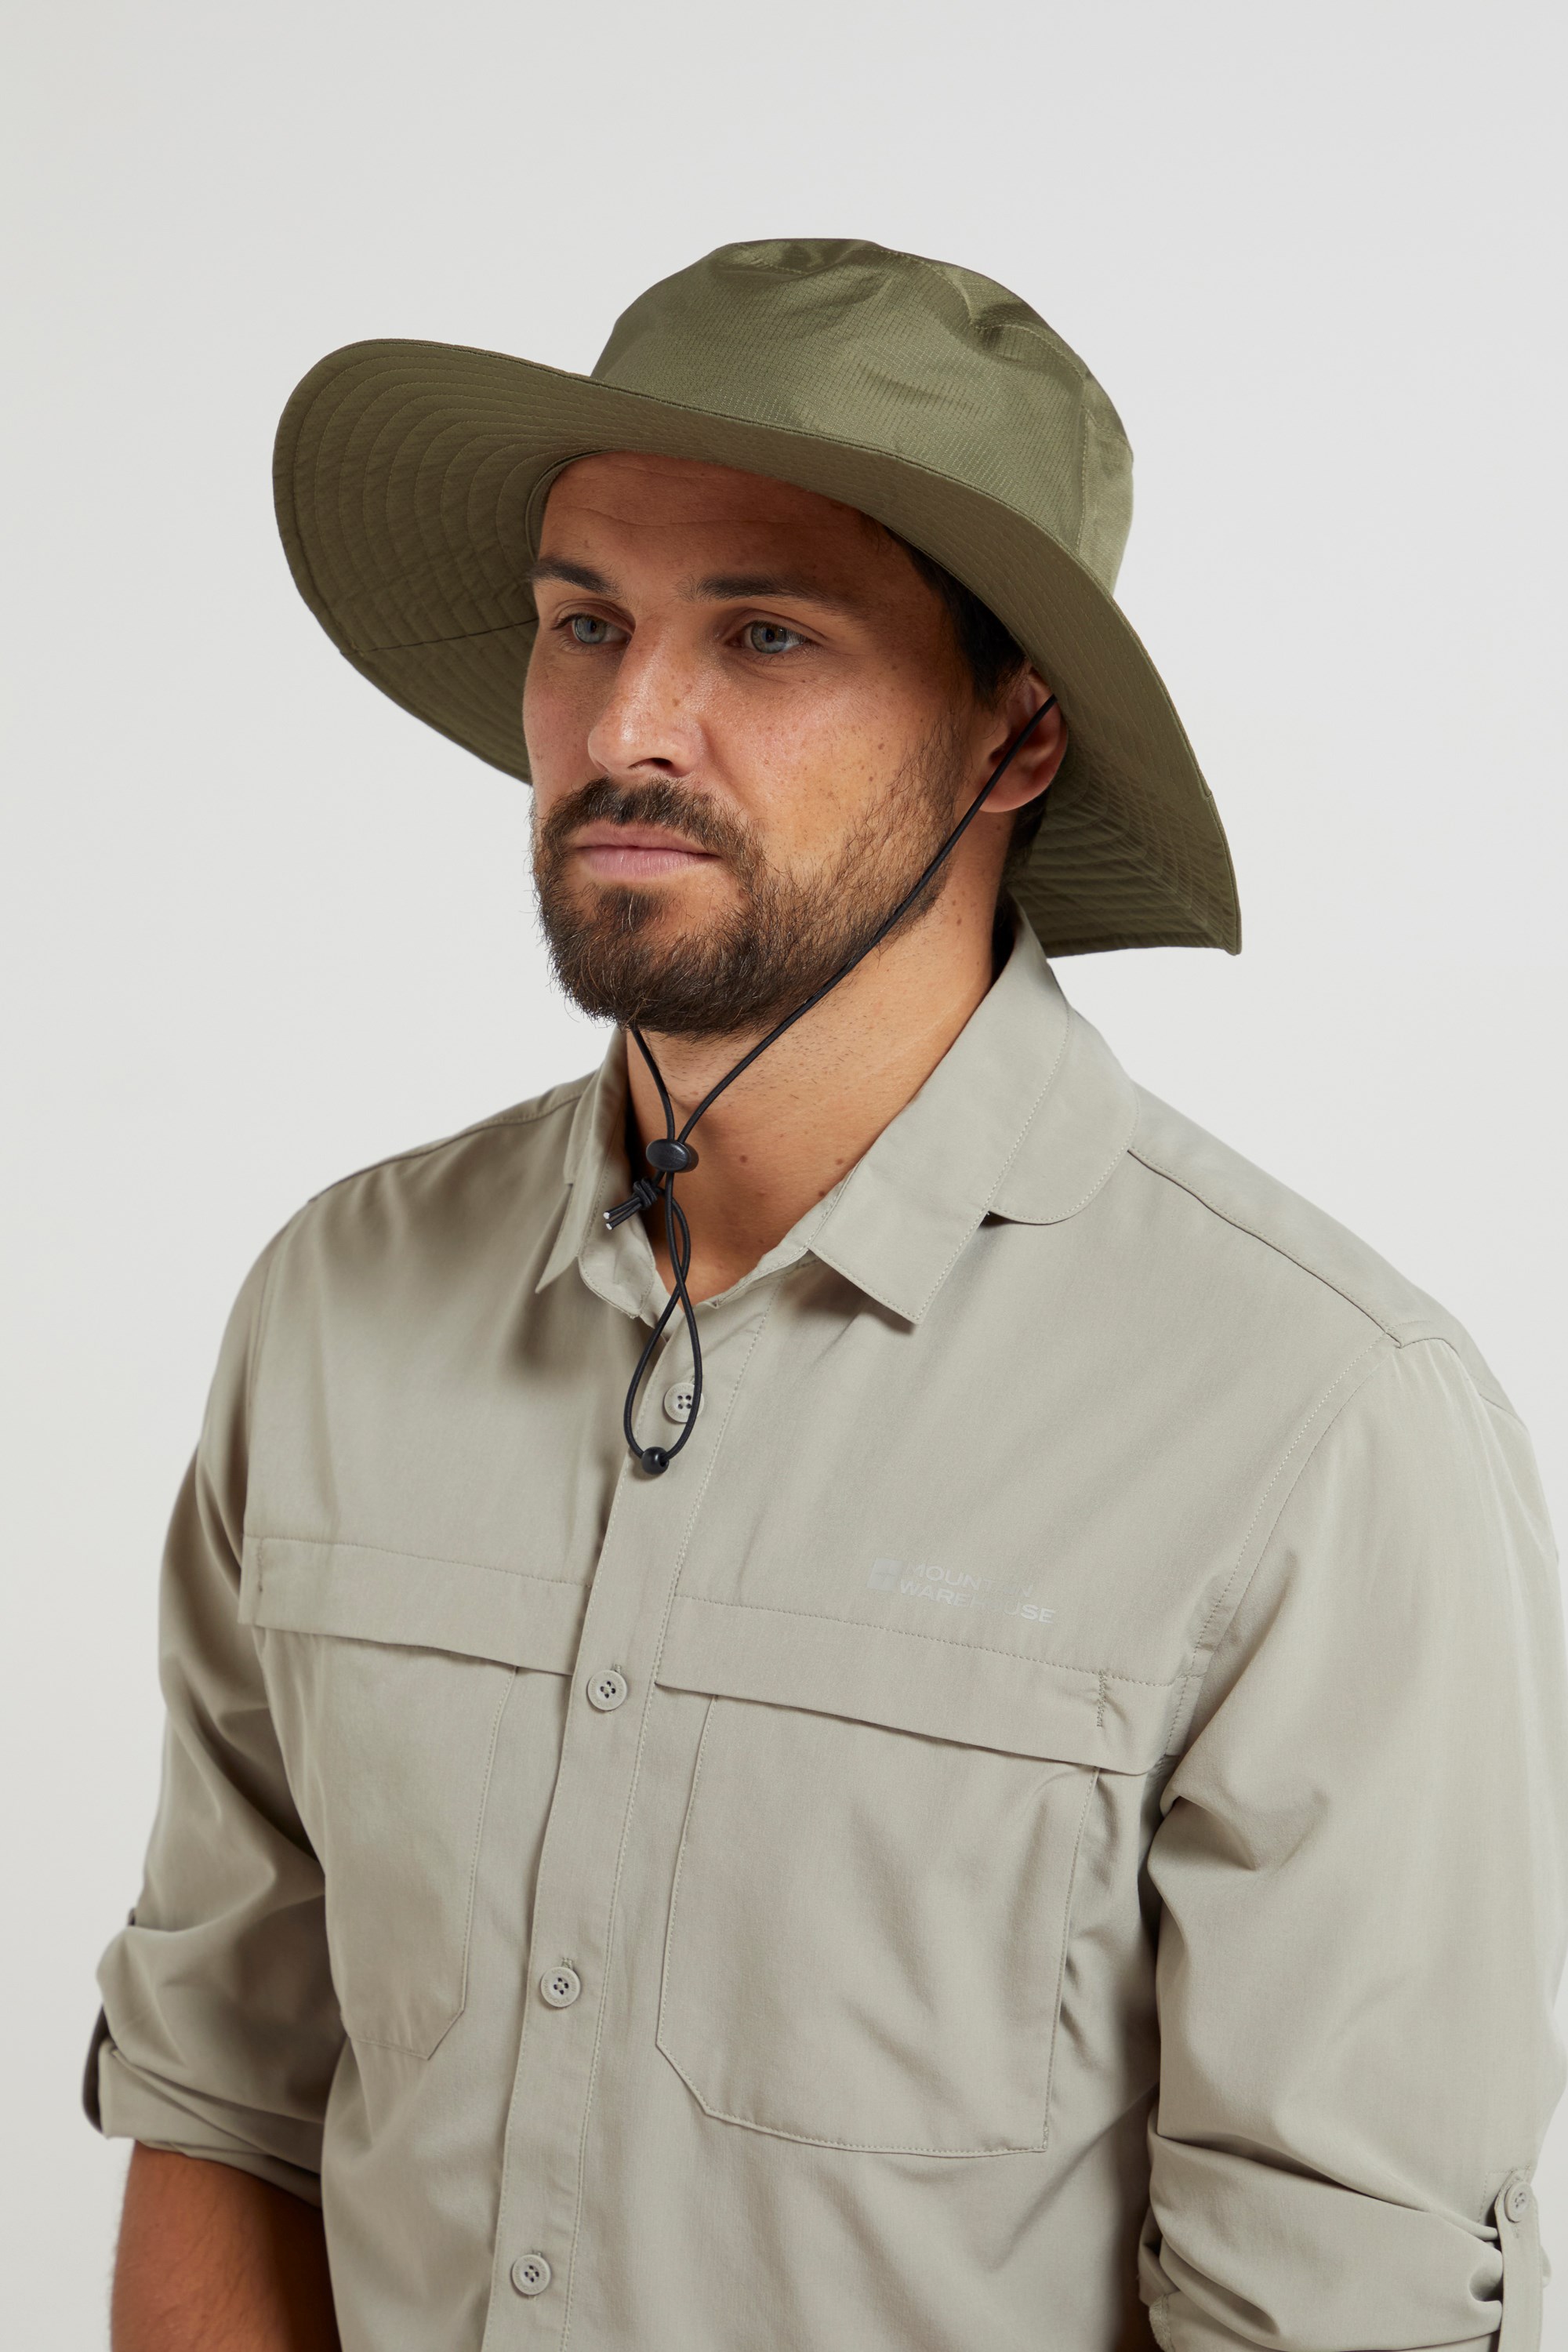 Australian Wide Brimmed Waterproof Hat | Mountain Warehouse US